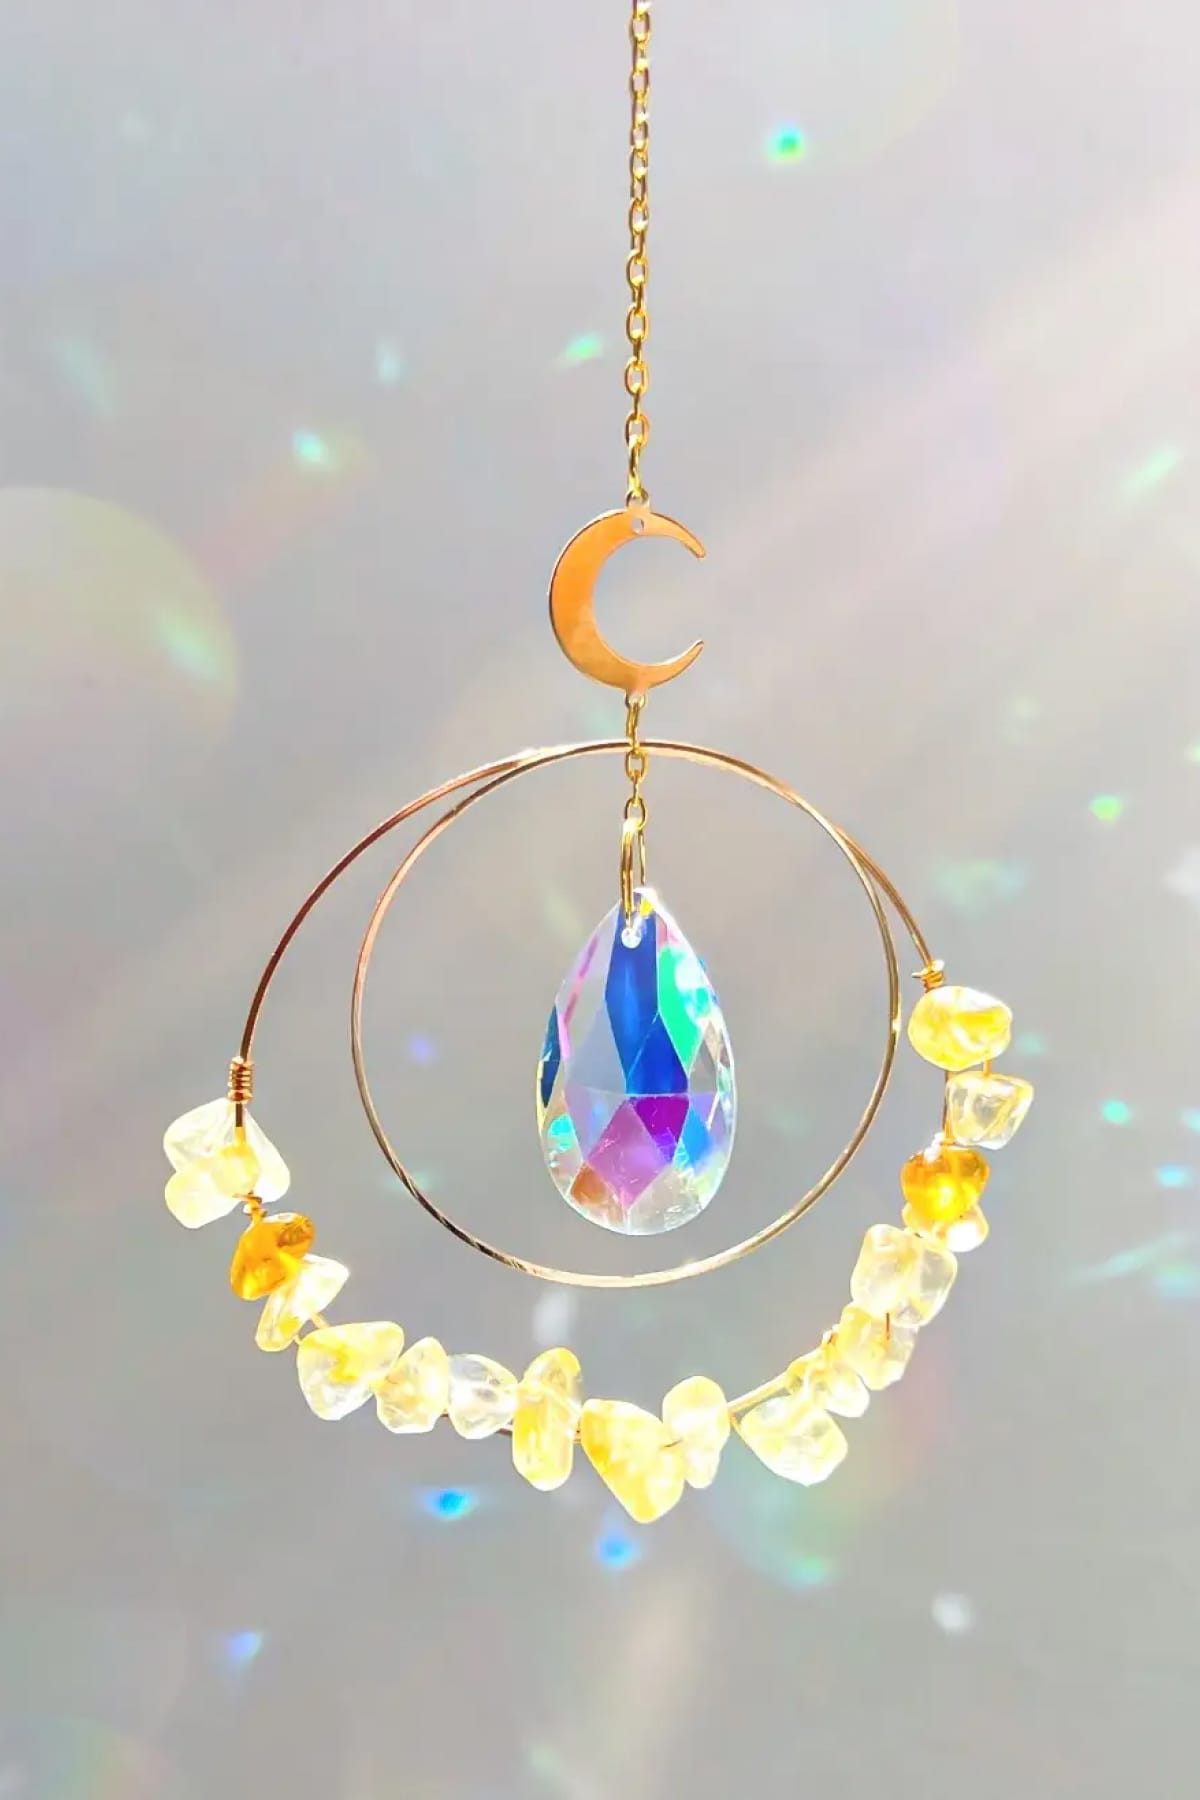 Sunny Citrine Crystal Suncatcher with Rainbow Reflections - Suncatcher